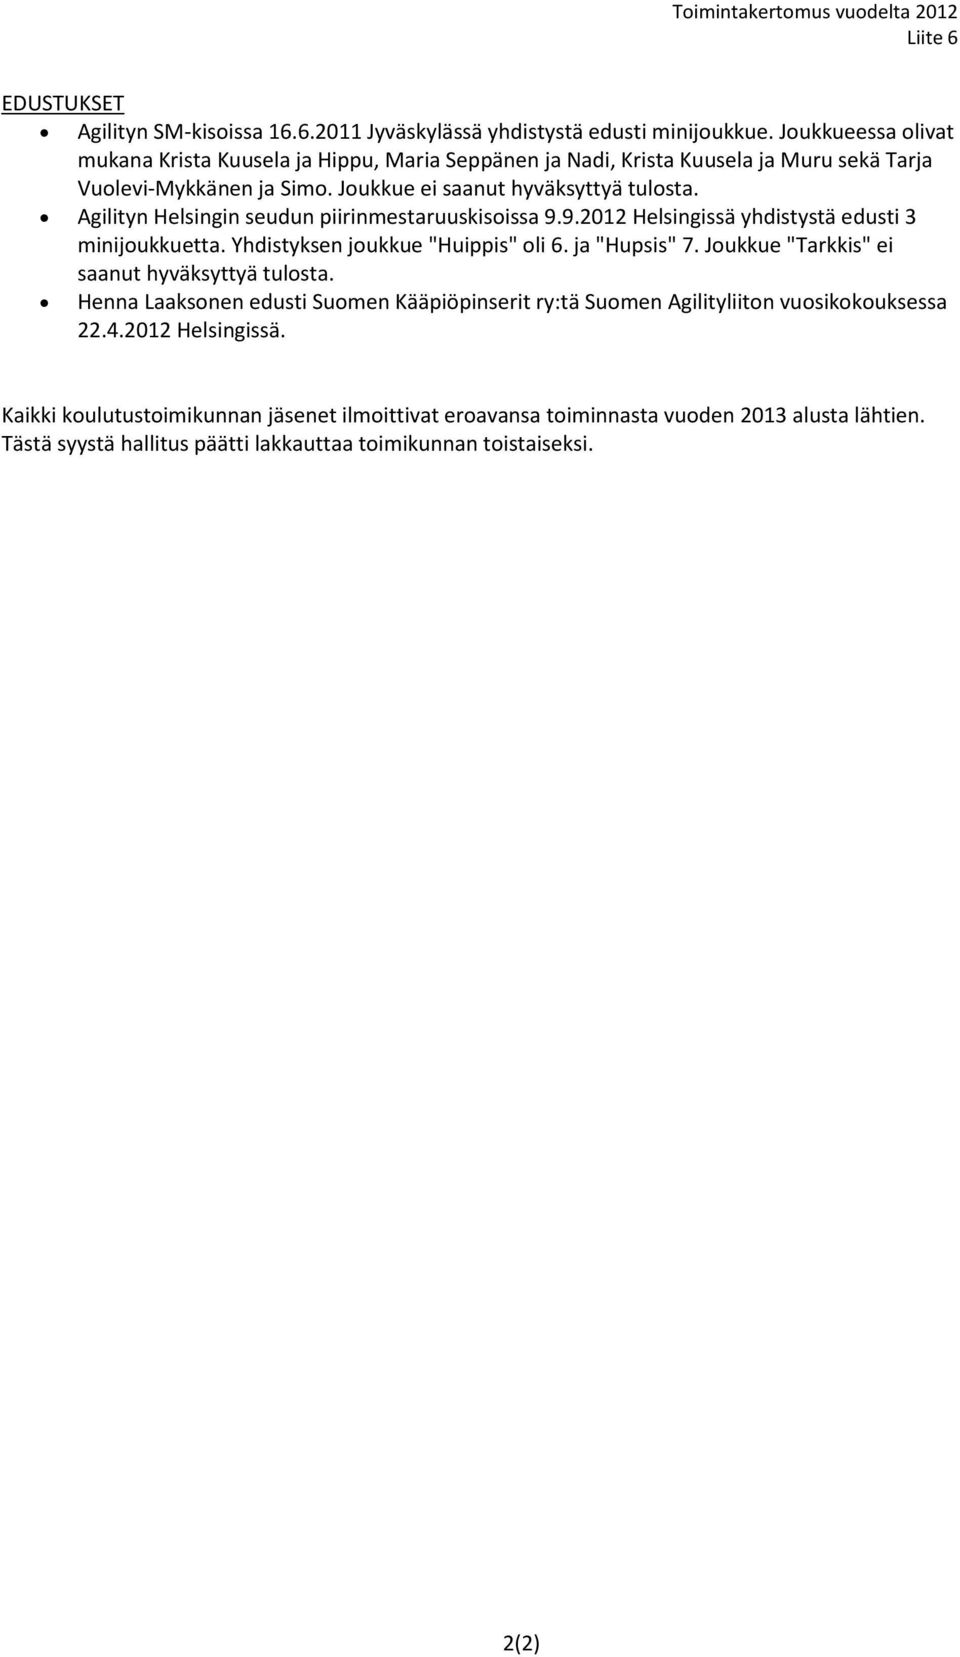 Agilityn Helsingin seudun piirinmestaruuskisoissa 9.9.2012 Helsingissä yhdistystä edusti 3 minijoukkuetta. Yhdistyksen joukkue "Huippis" oli 6. ja "Hupsis" 7.